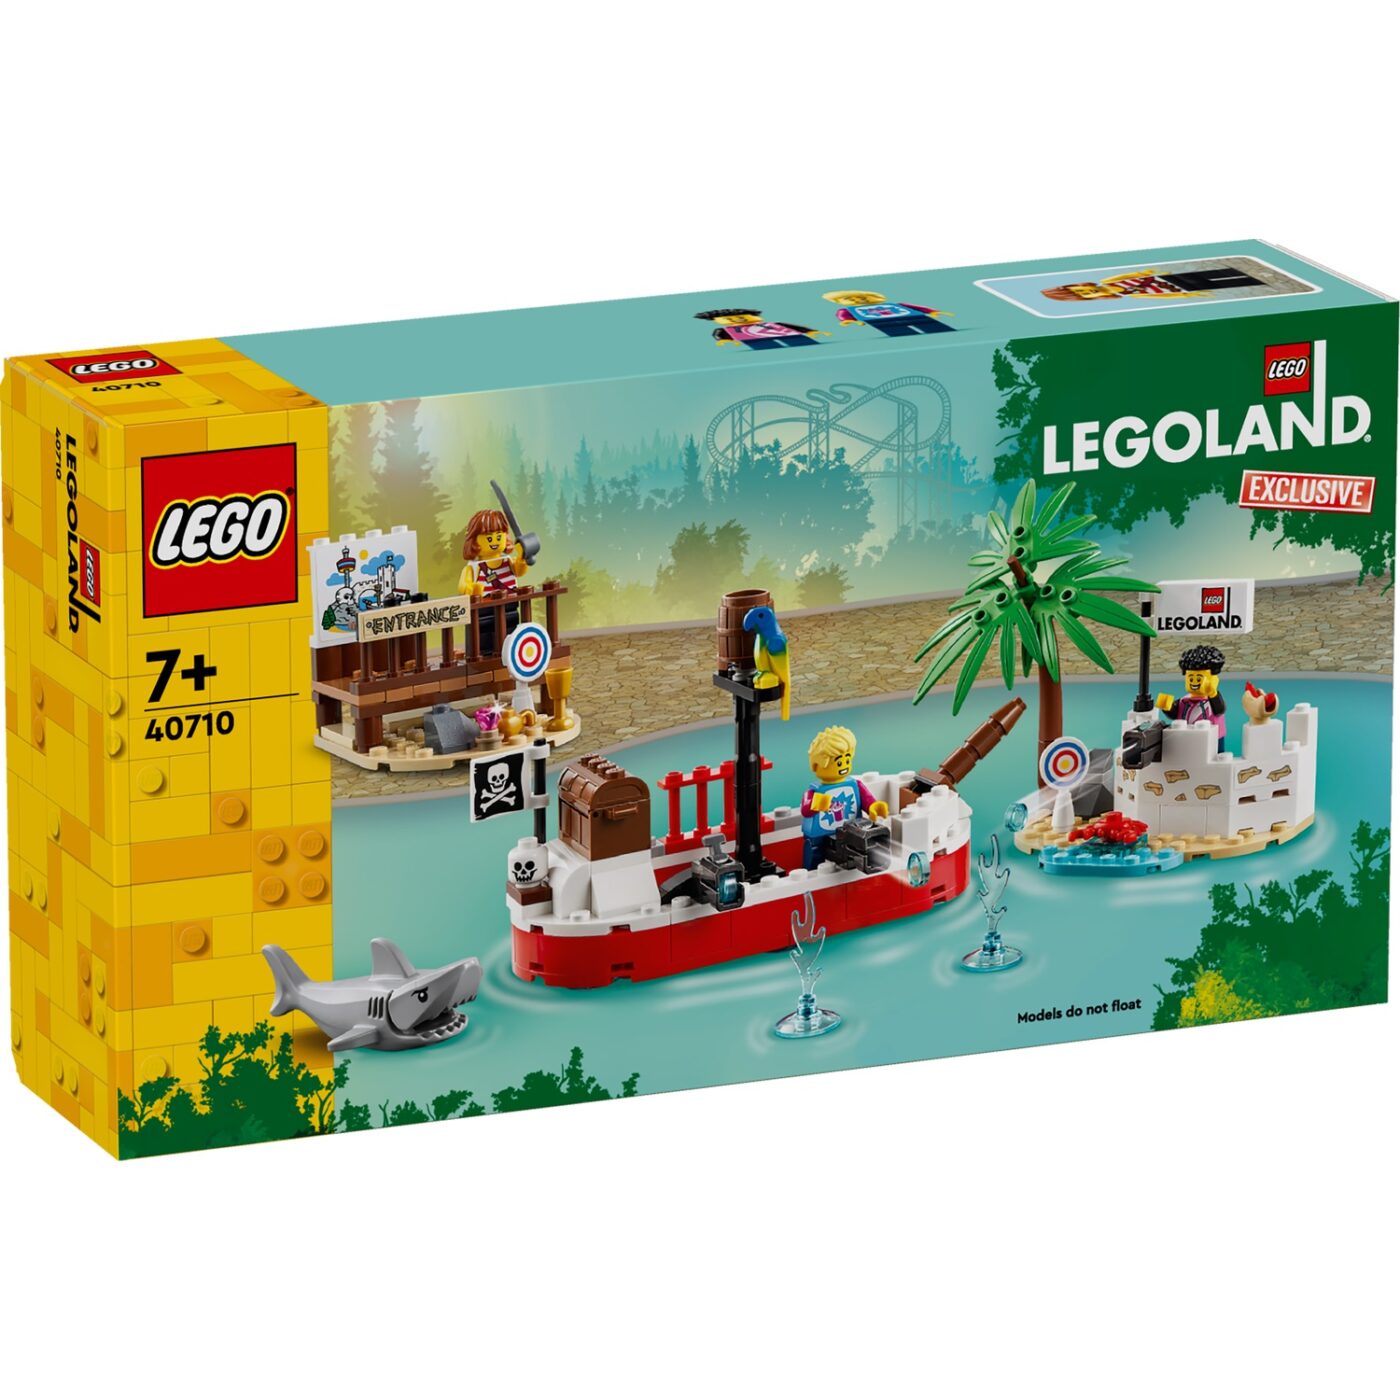 New LEGOLAND-exclusive 40710 Legoland Pirate Splash Battle revealed!0